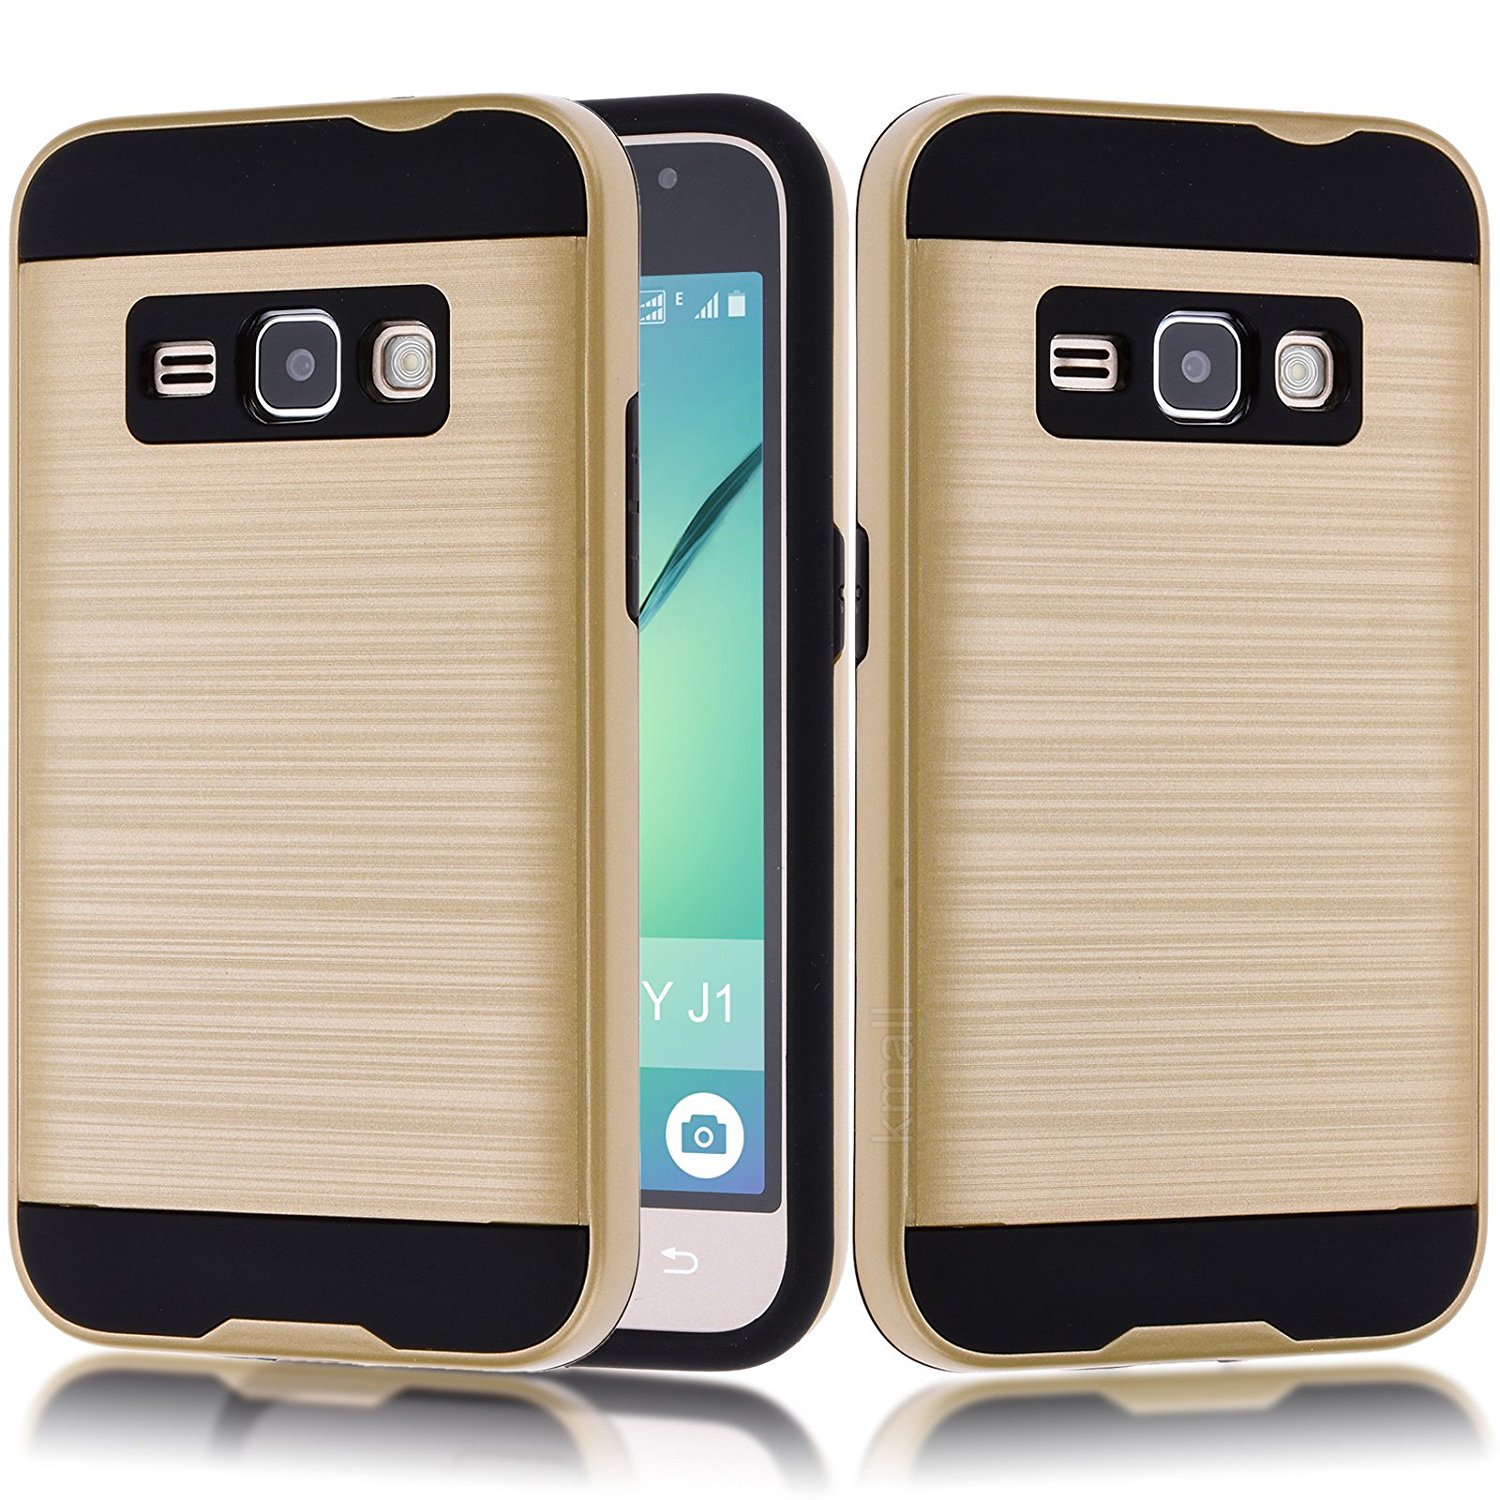 Samsung Galaxy J1 (2016) / Amp 2 / Express 3 / Galaxy Luna Armor Hybrid Case (Gold)